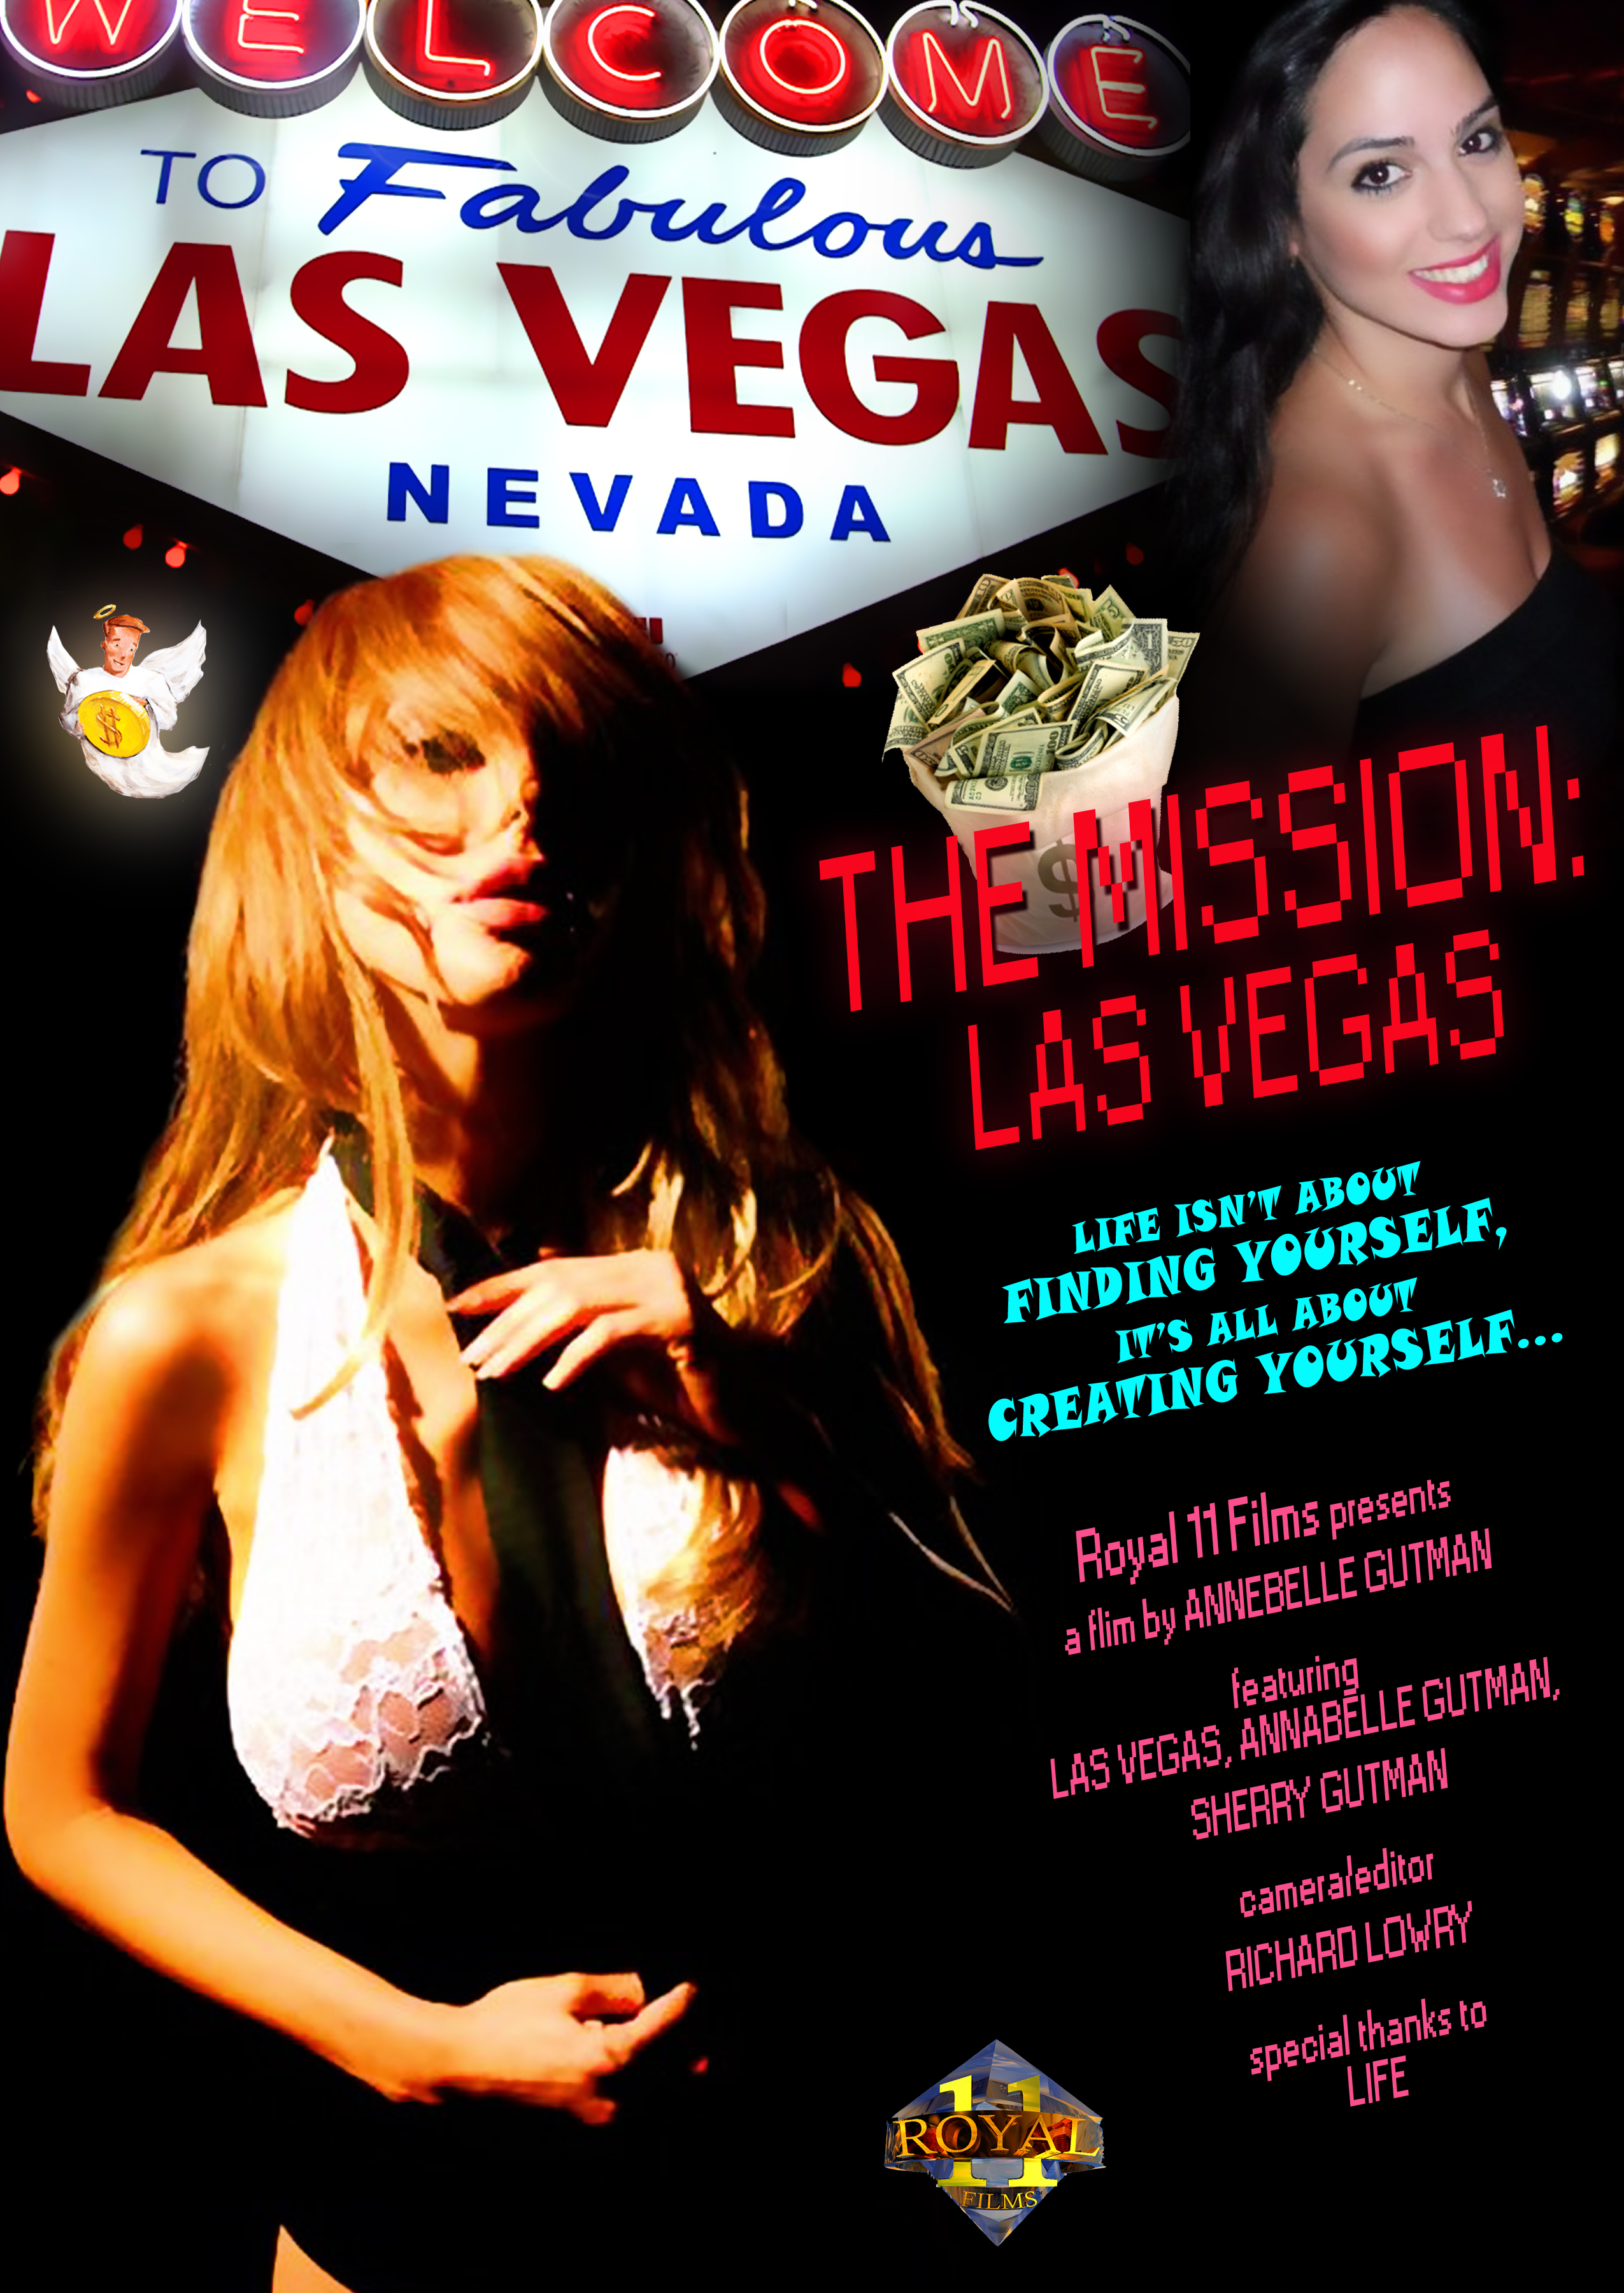 The Mission Las Vegas